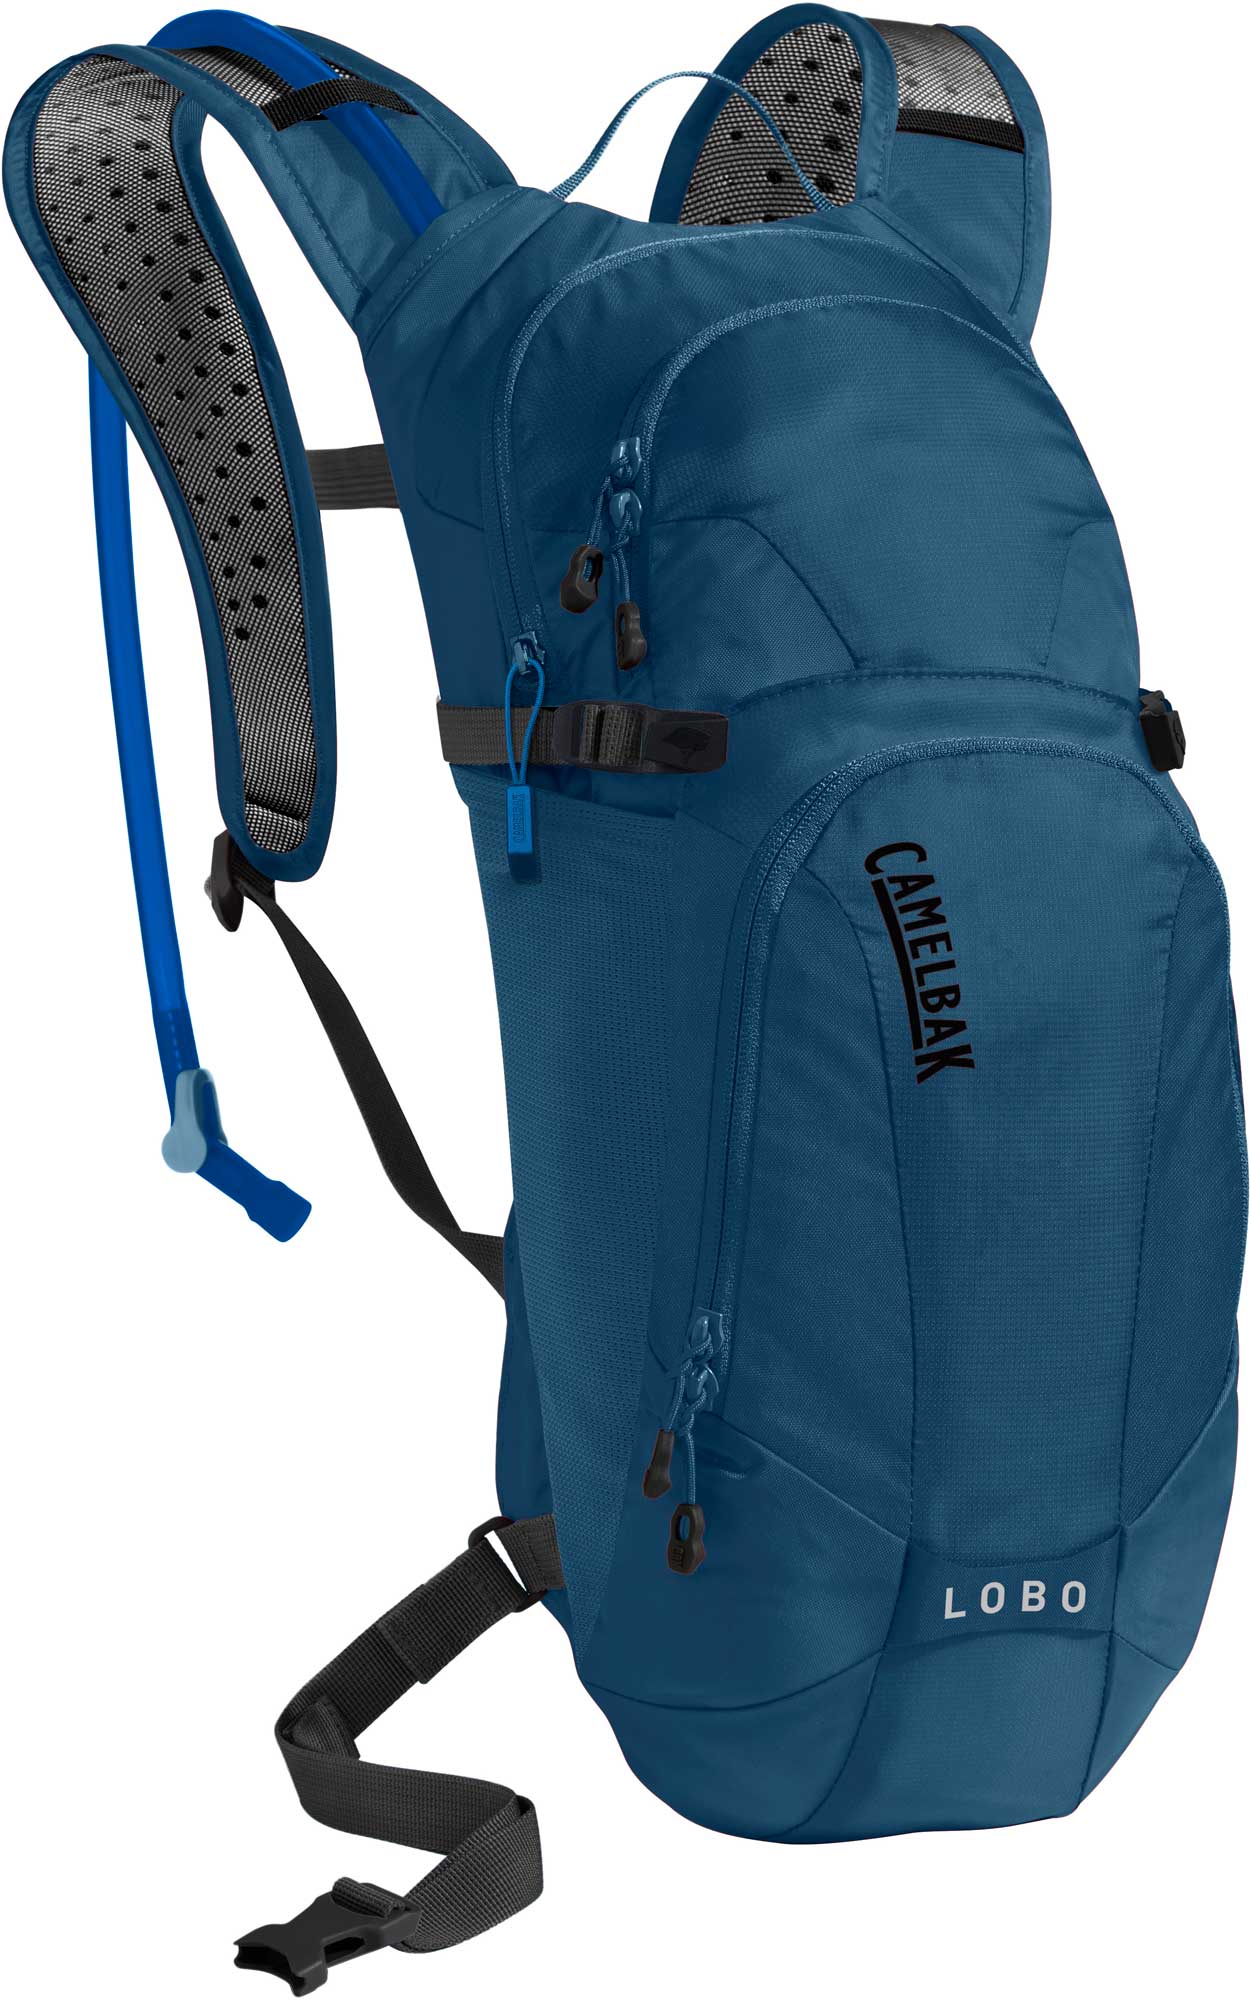 Camelbak Lobo - Cycling backpack